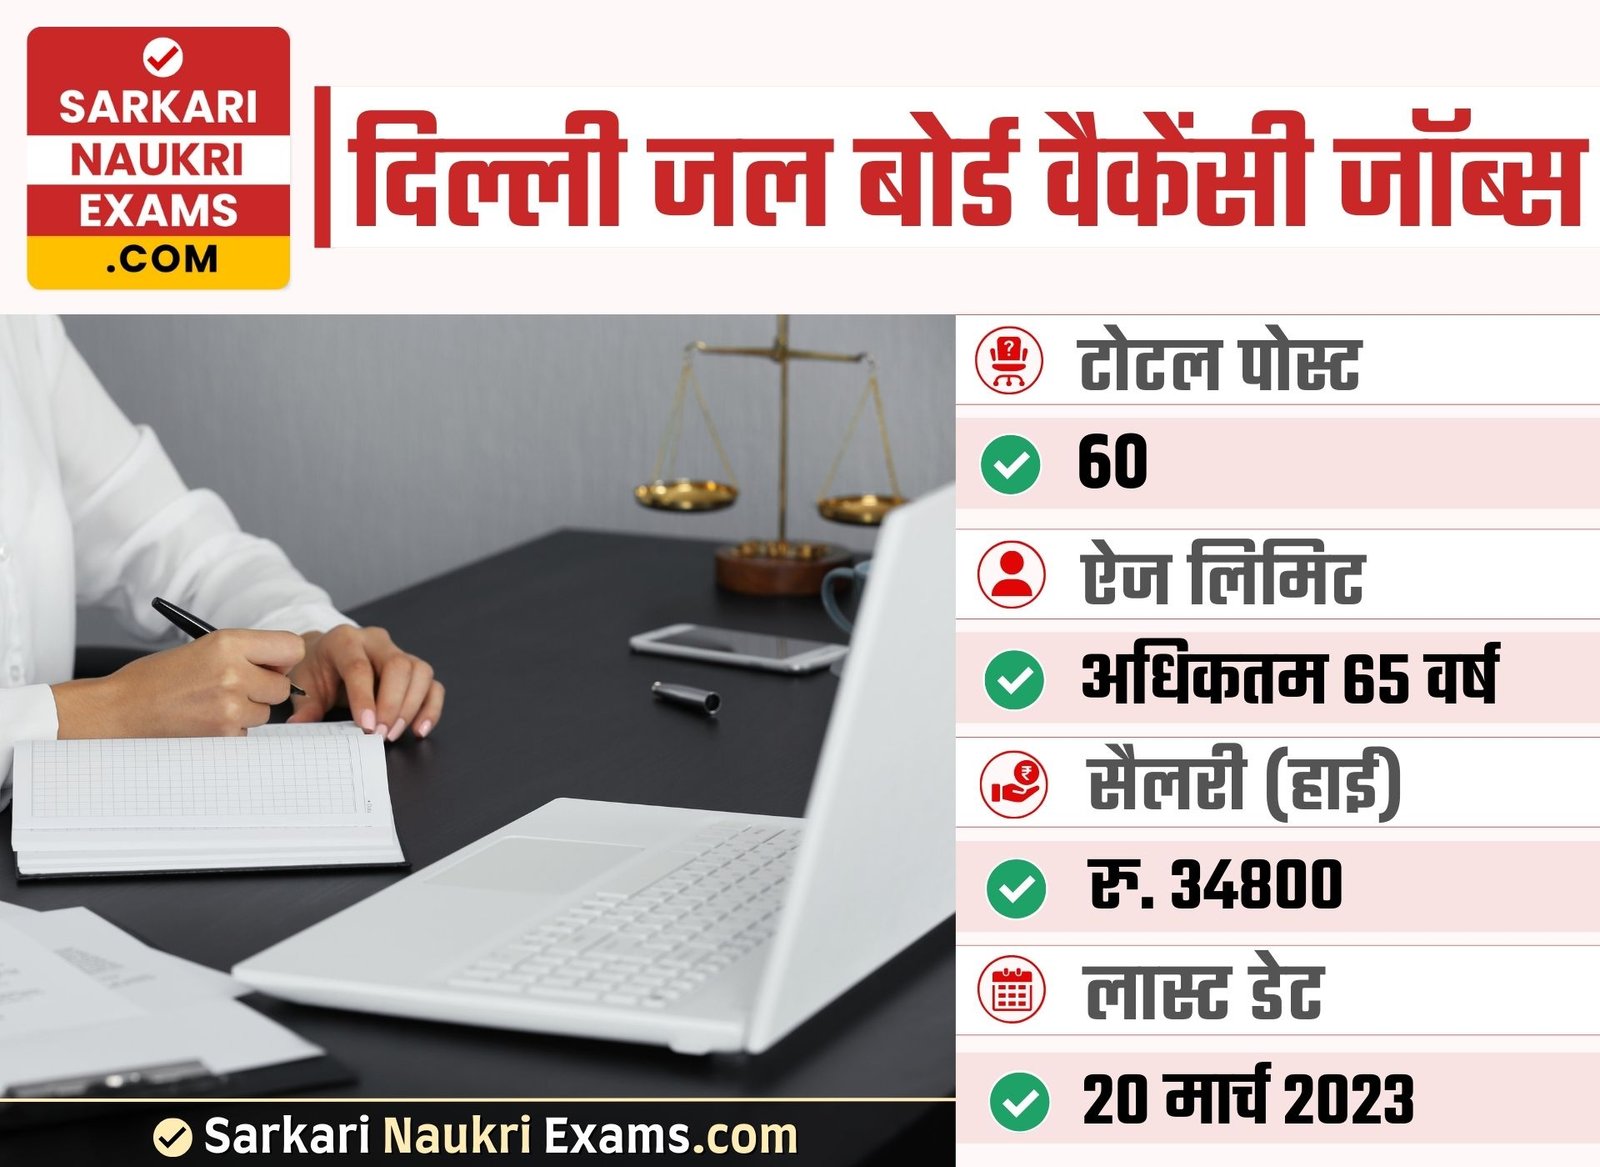 Delhi Jal Board Recruitment 2023 | Junior Accounts Officer (JAO) Vacancy Form